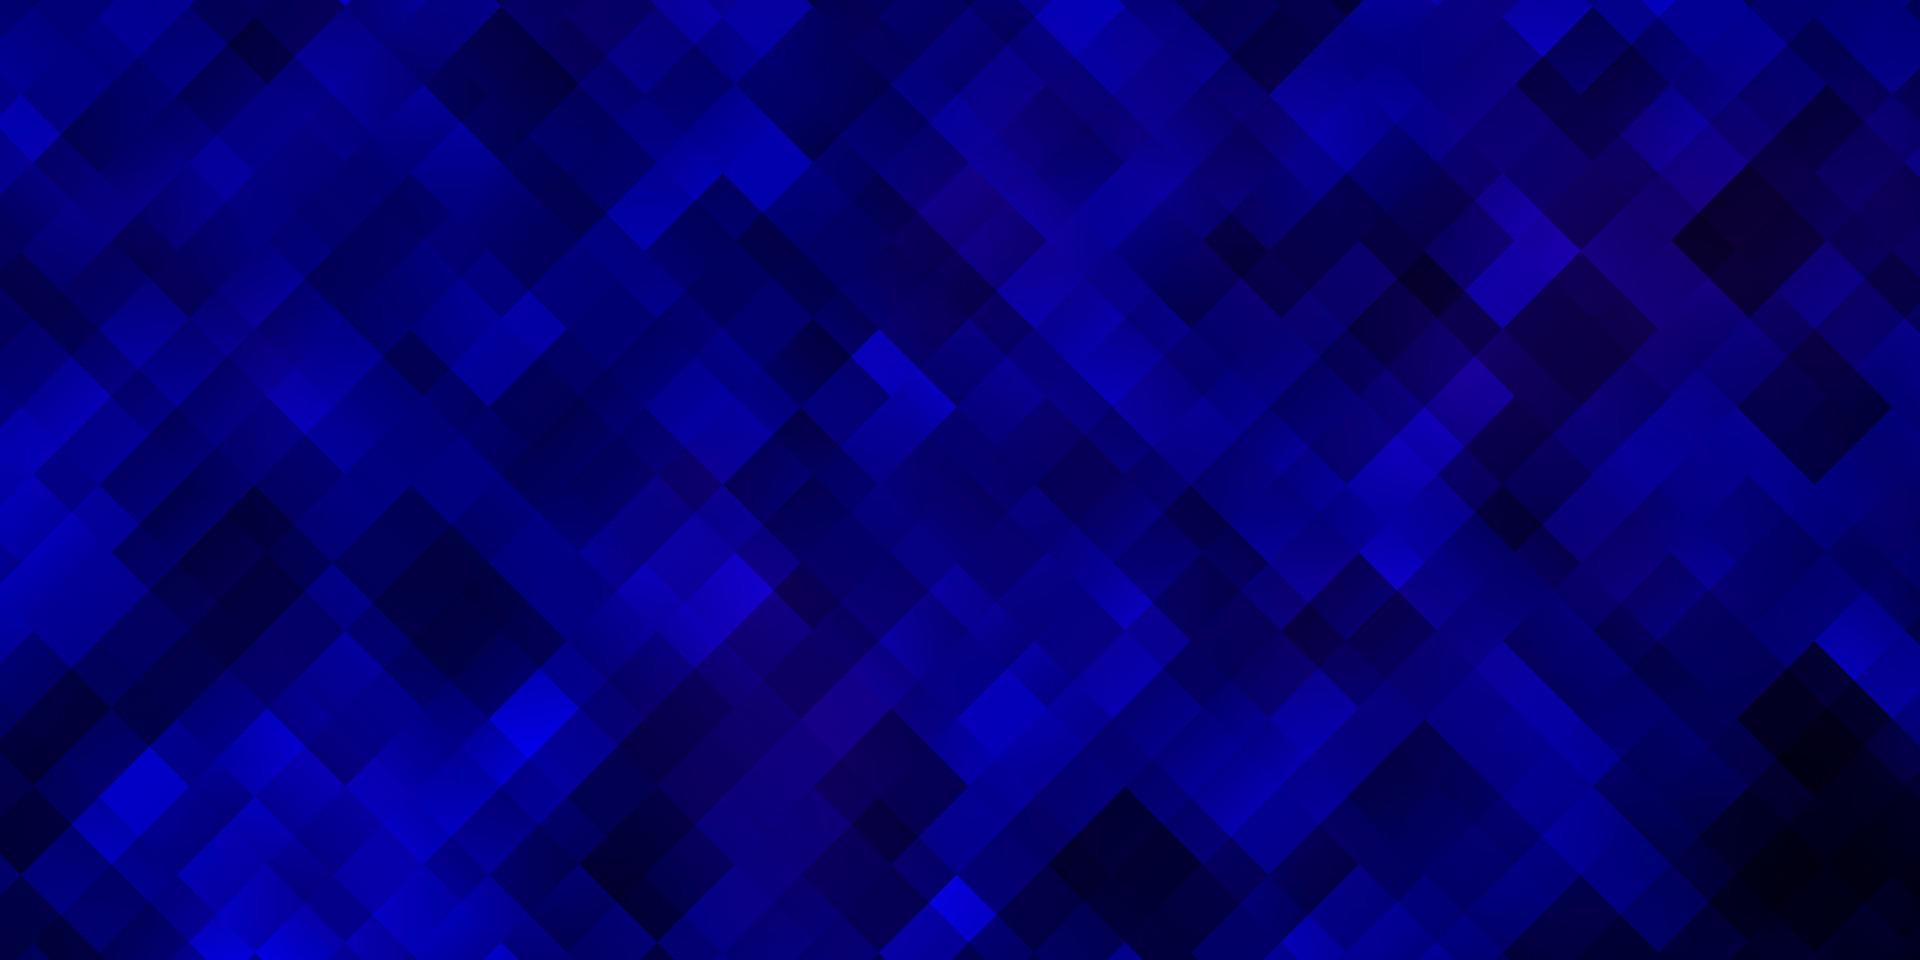 mörkblå vektormall med rektanglar. vektor